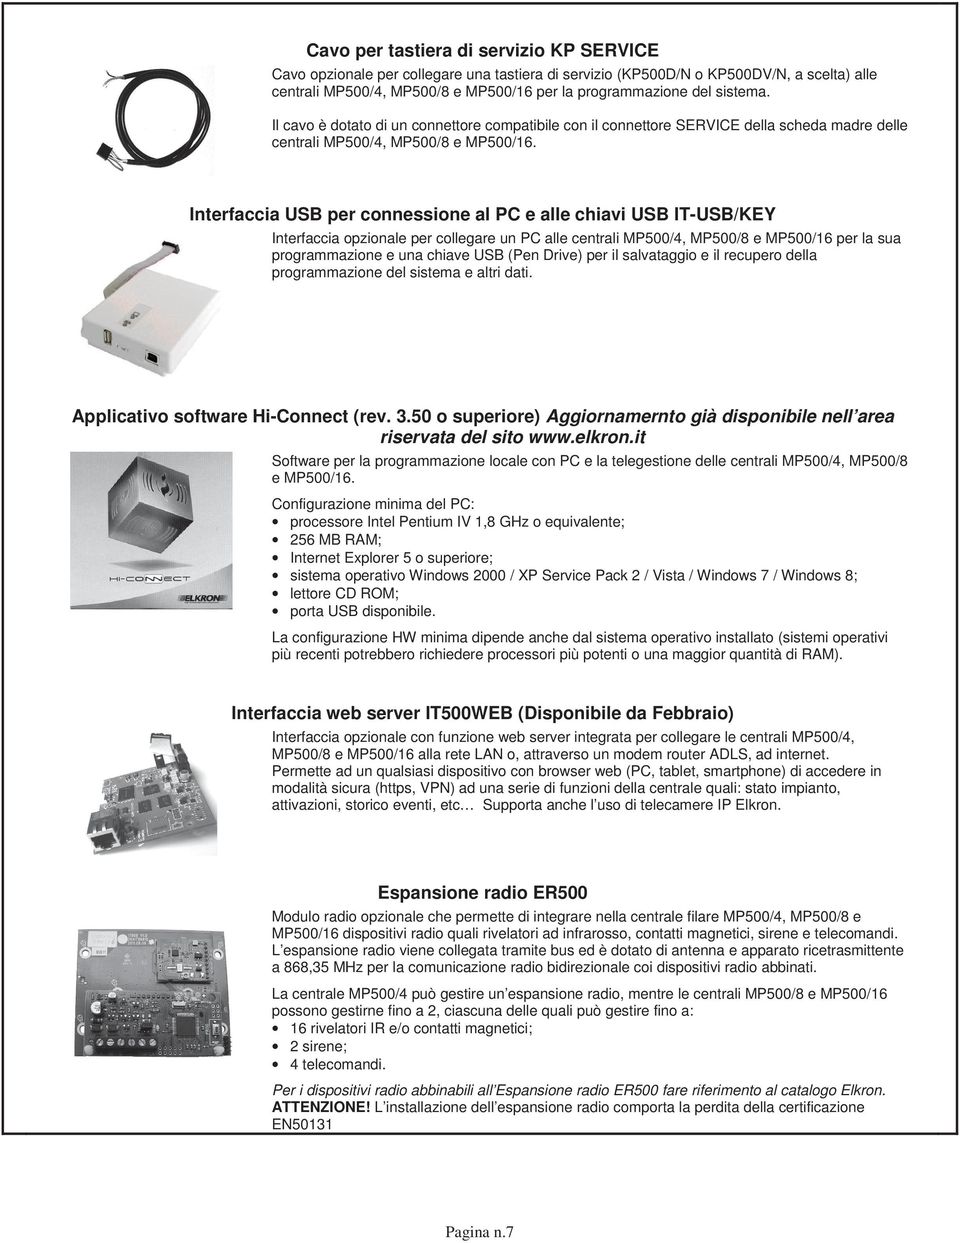 Interfaccia USB per connessione al PC e alle chiavi USB IT-USB/KEY Interfaccia opzionale per collegare un PC alle centrali MP500/4, MP500/8 e MP500/16 per la sua programmazione e una chiave USB (Pen